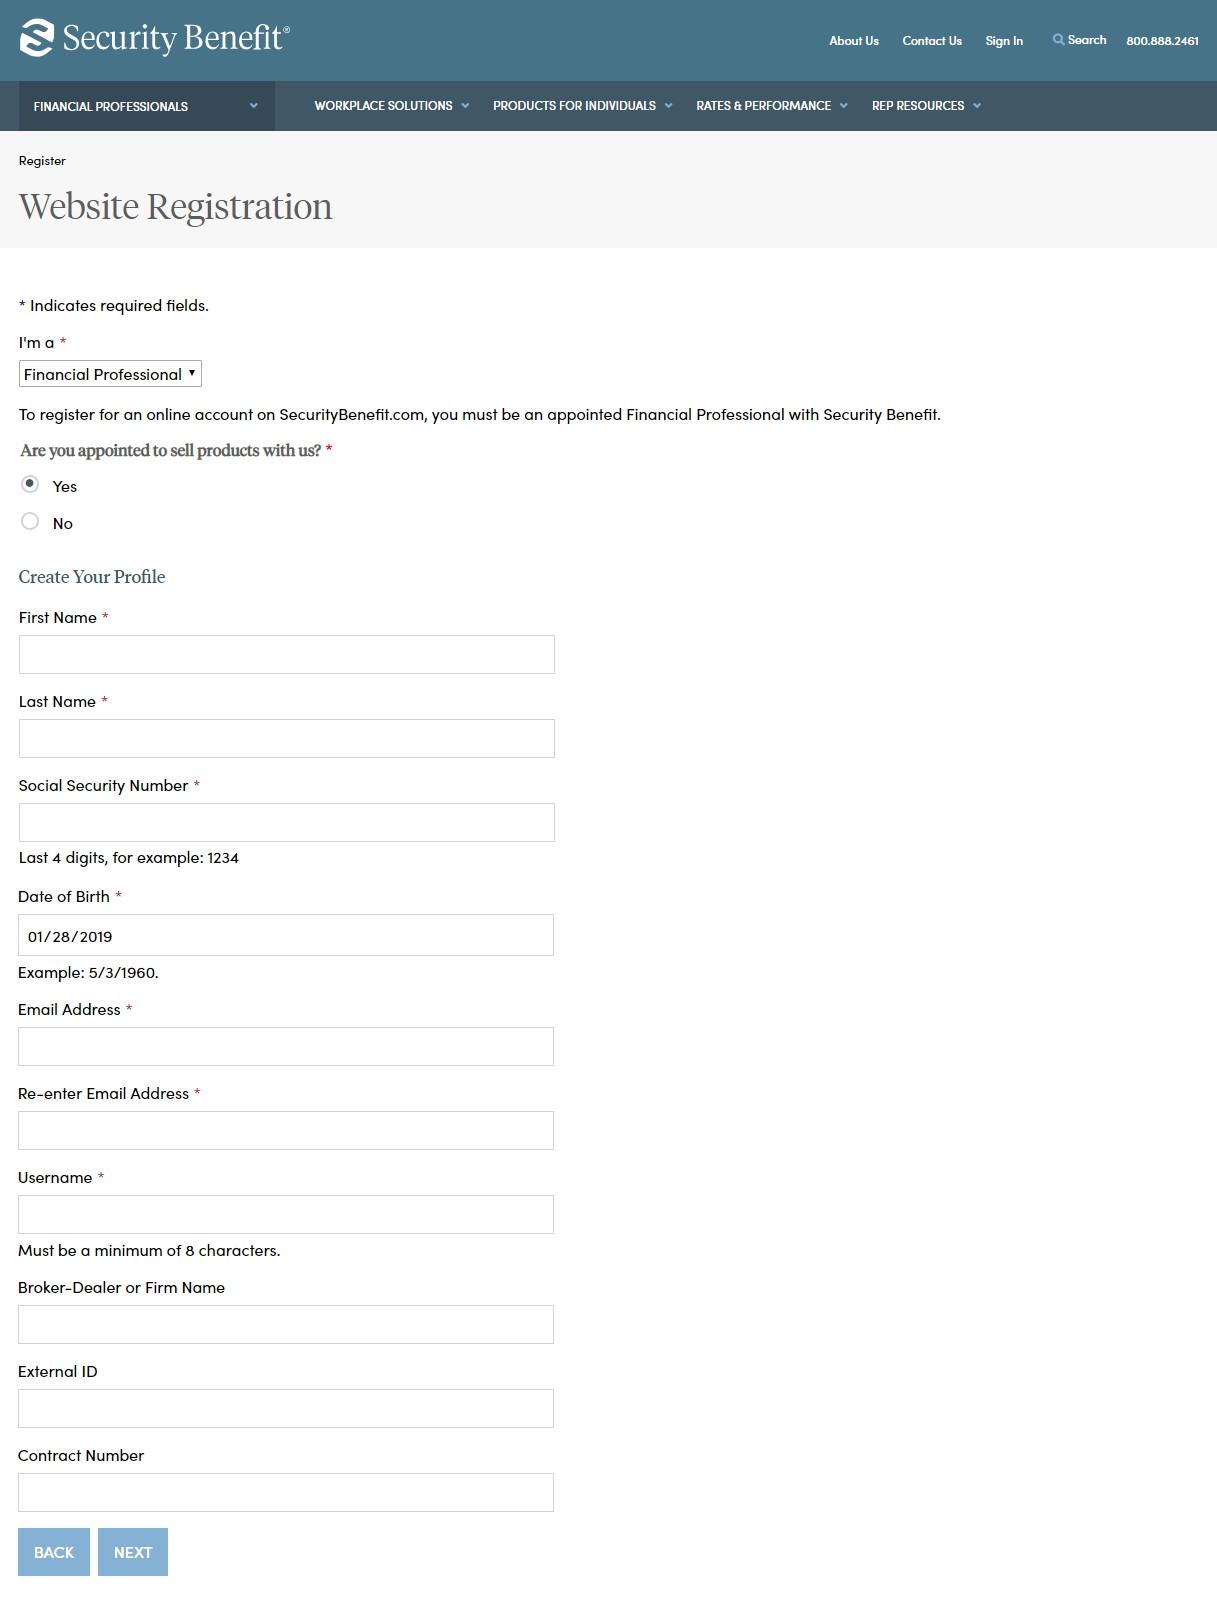 Website Registration Form